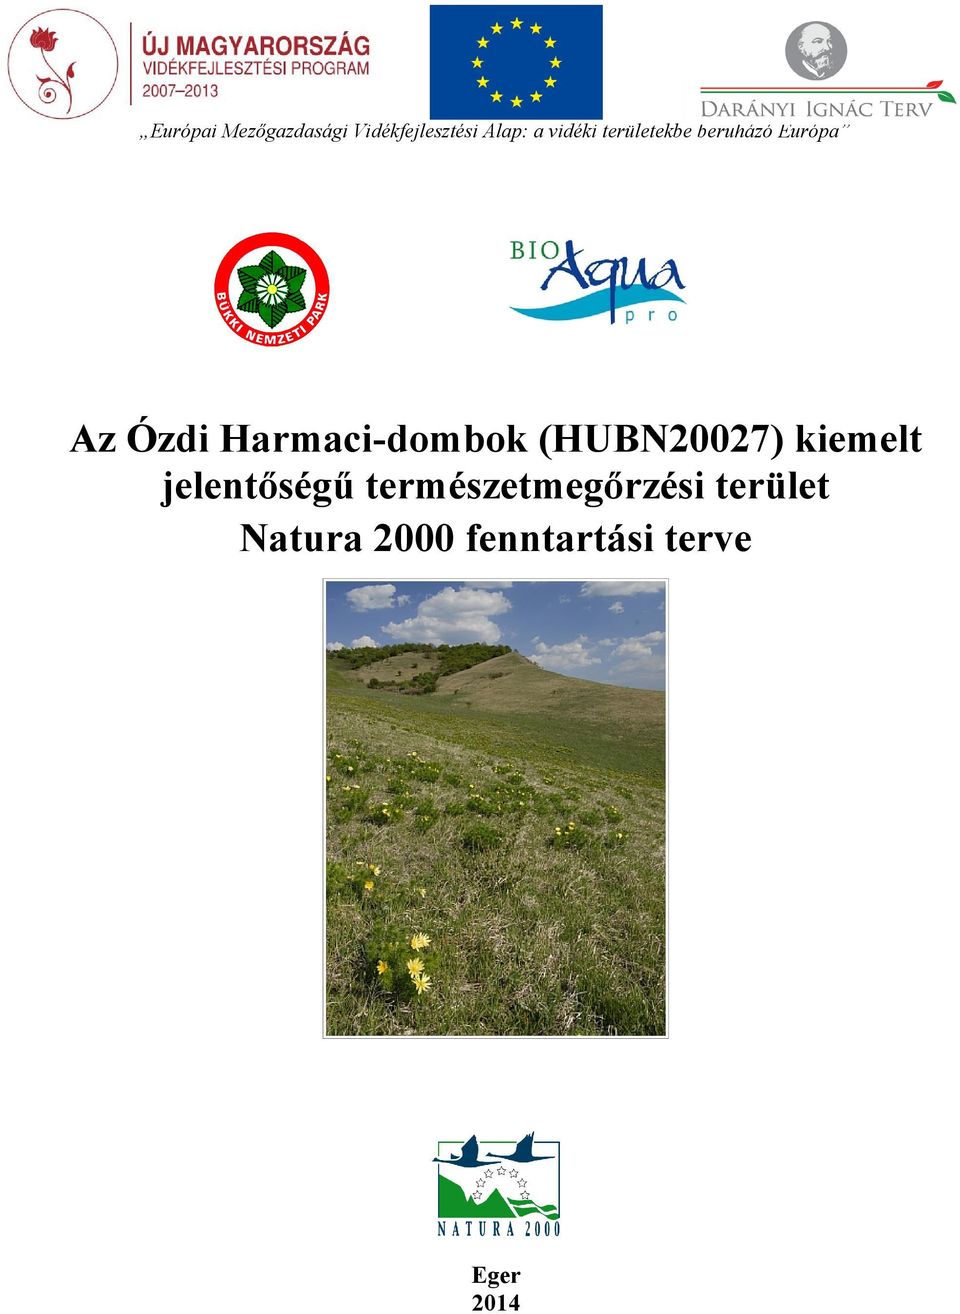 Harmaci-dombok (HUBN20027) kiemelt jelentőségű